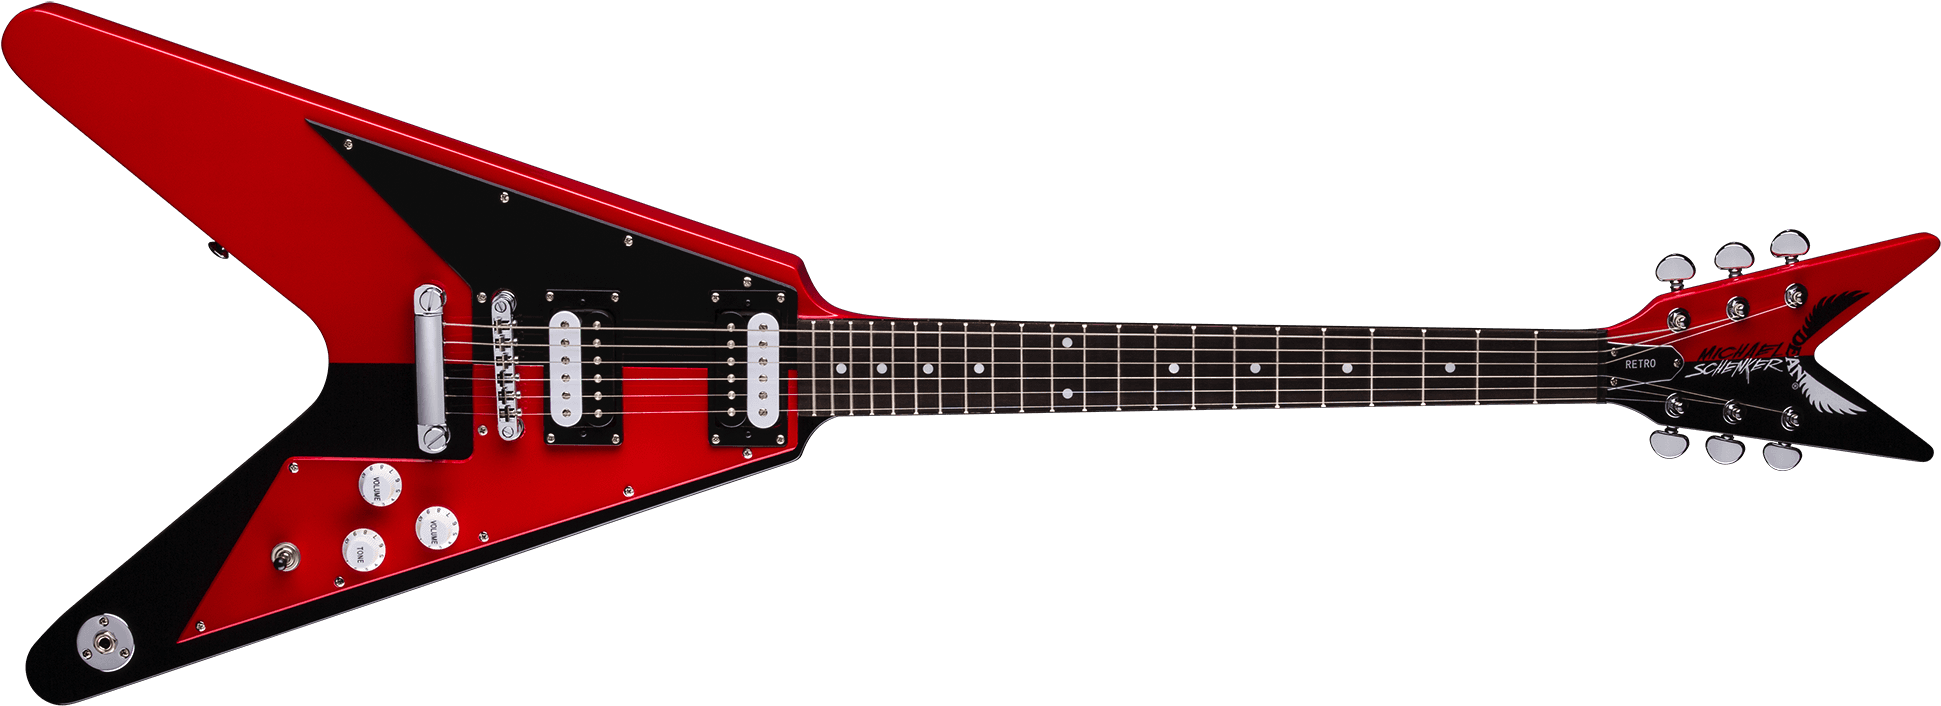 Красная электрическая гитара PNG Image